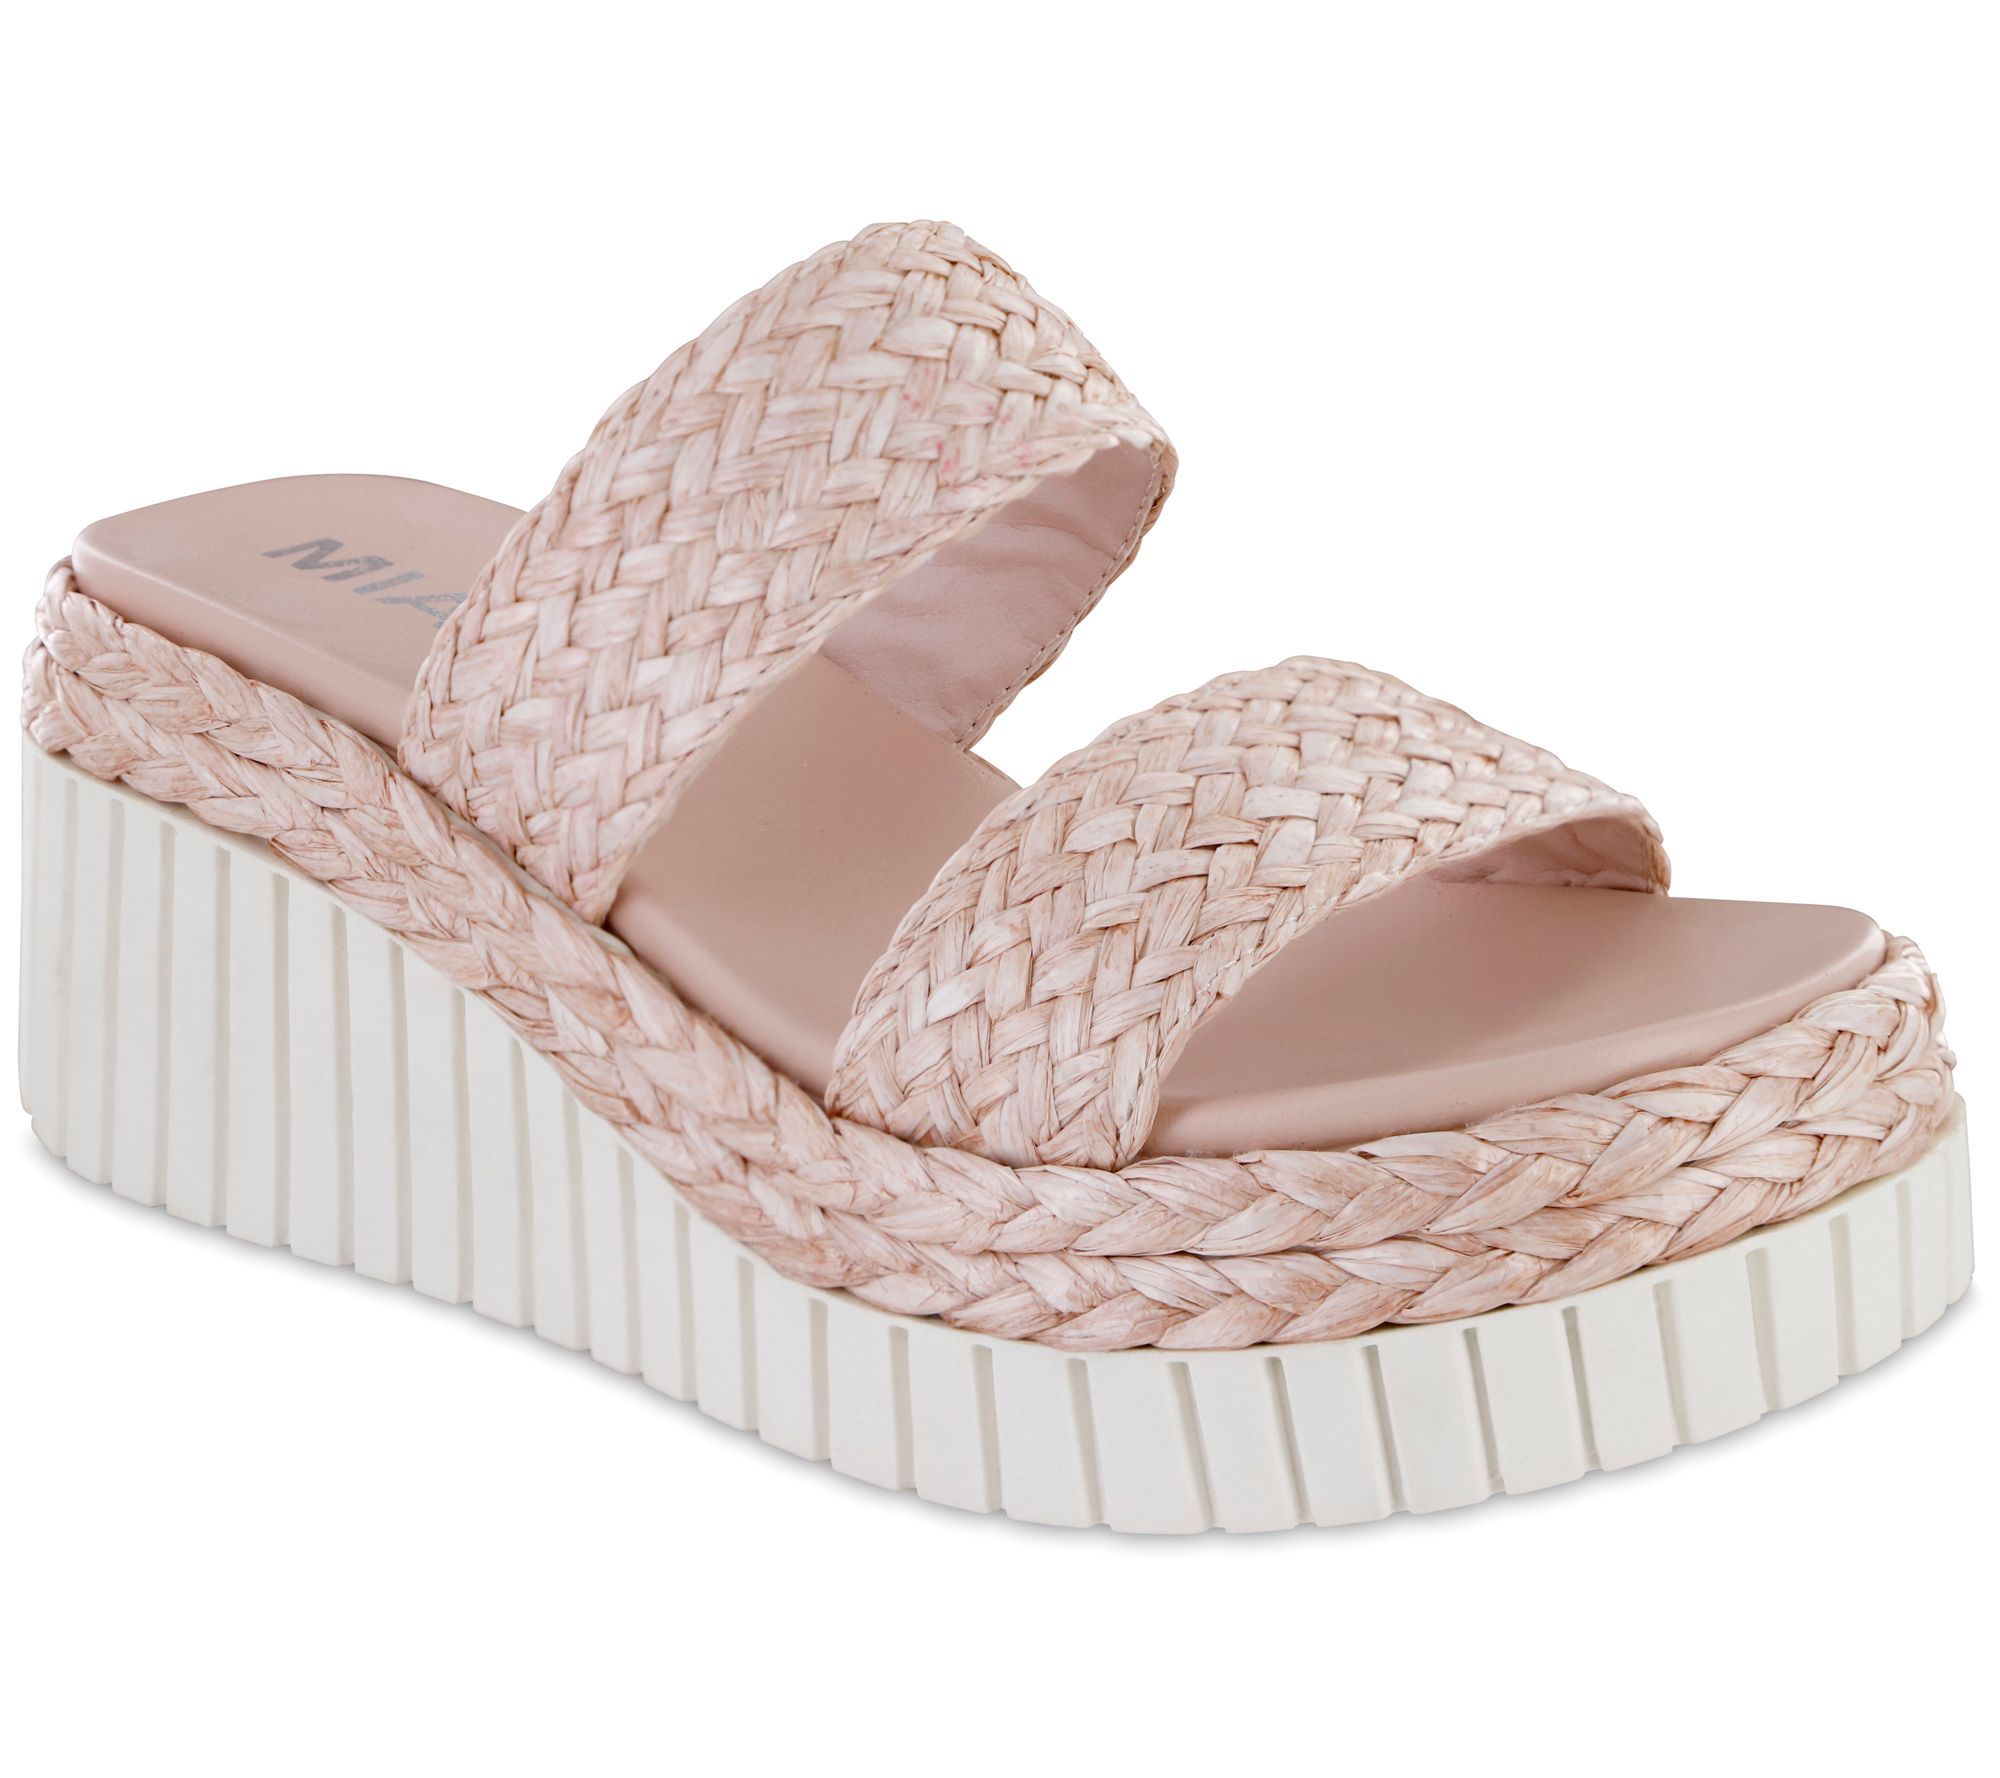 MIA Shoes Slip-On Wedge Sandals - Zayla - QVC.com